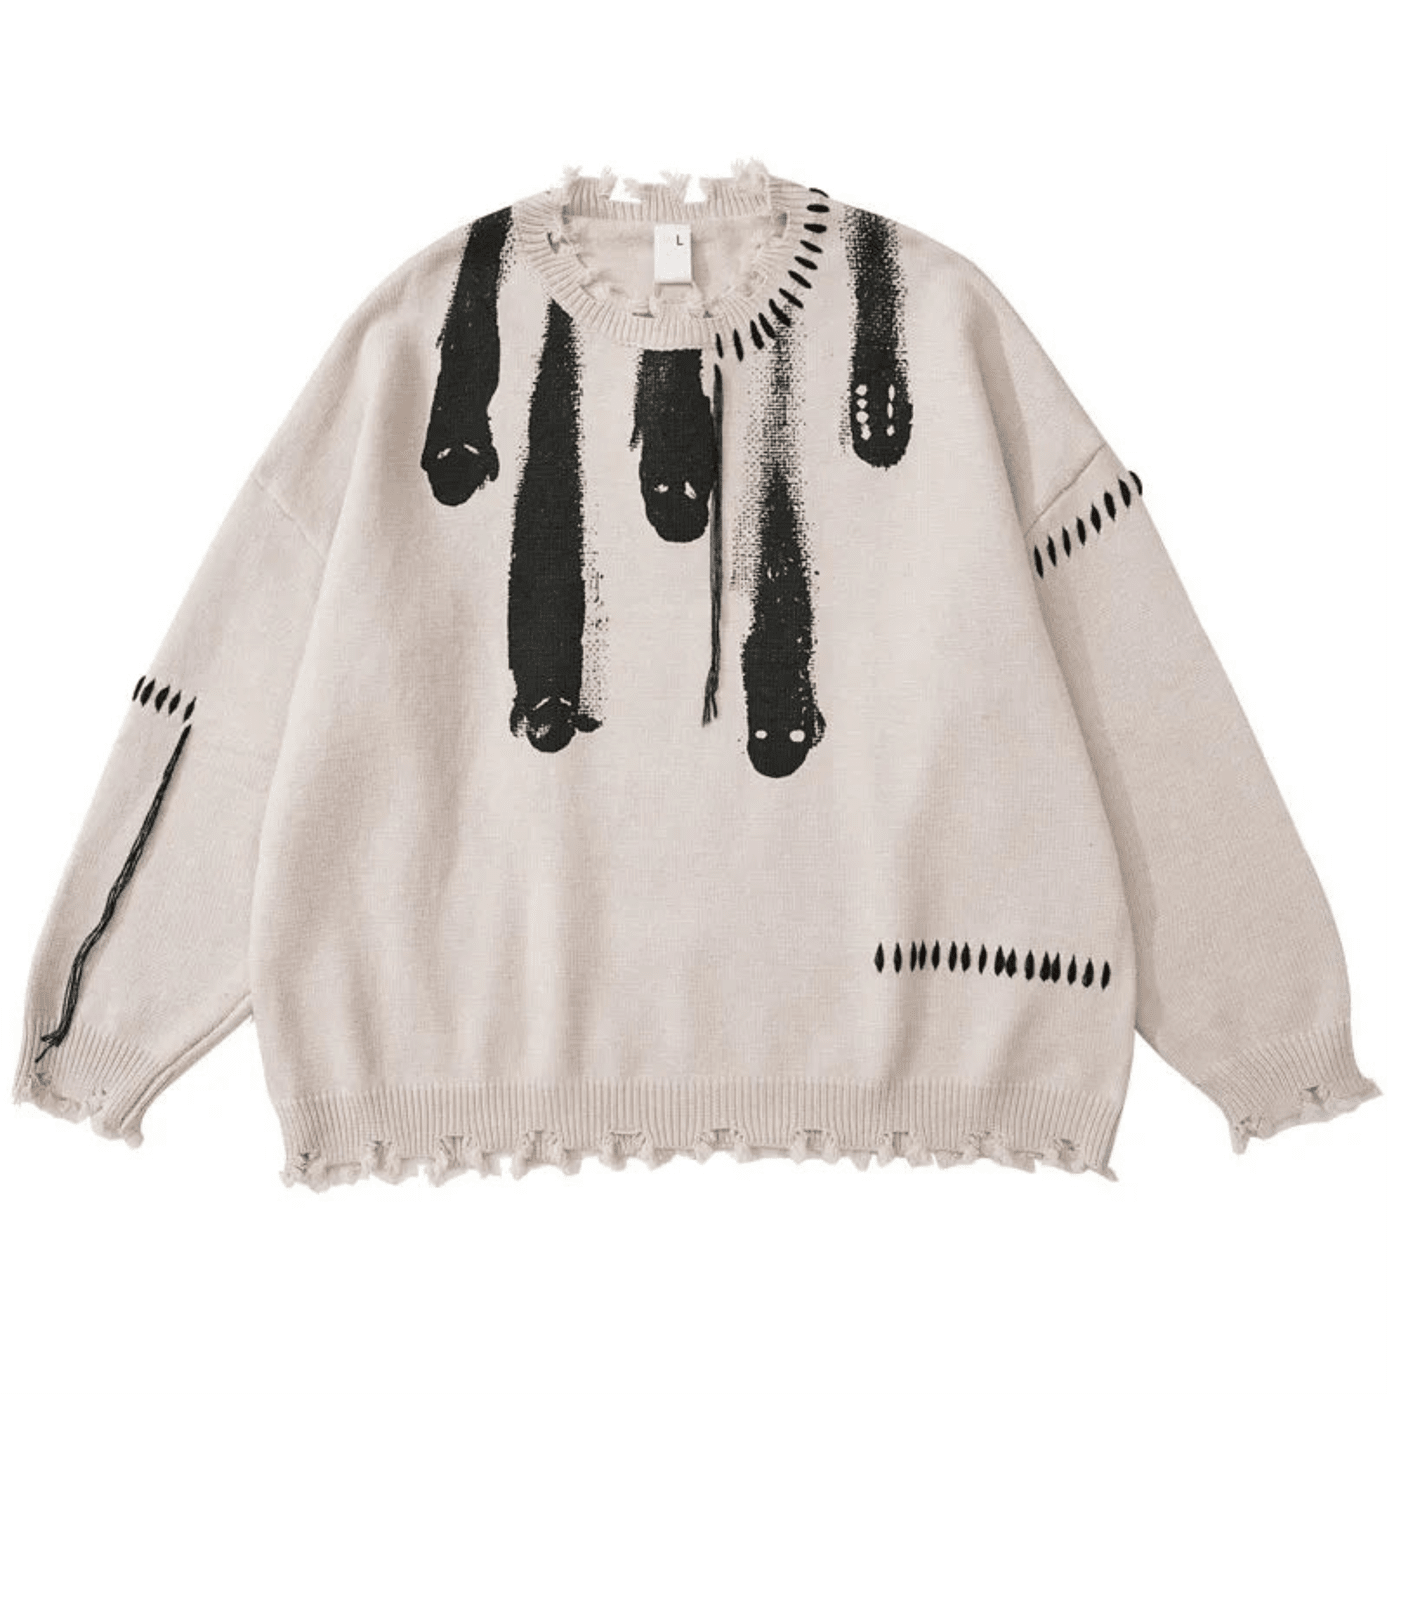 Artisanal Brushstroke Knit Sweater: Vintage Streetwear Elegance